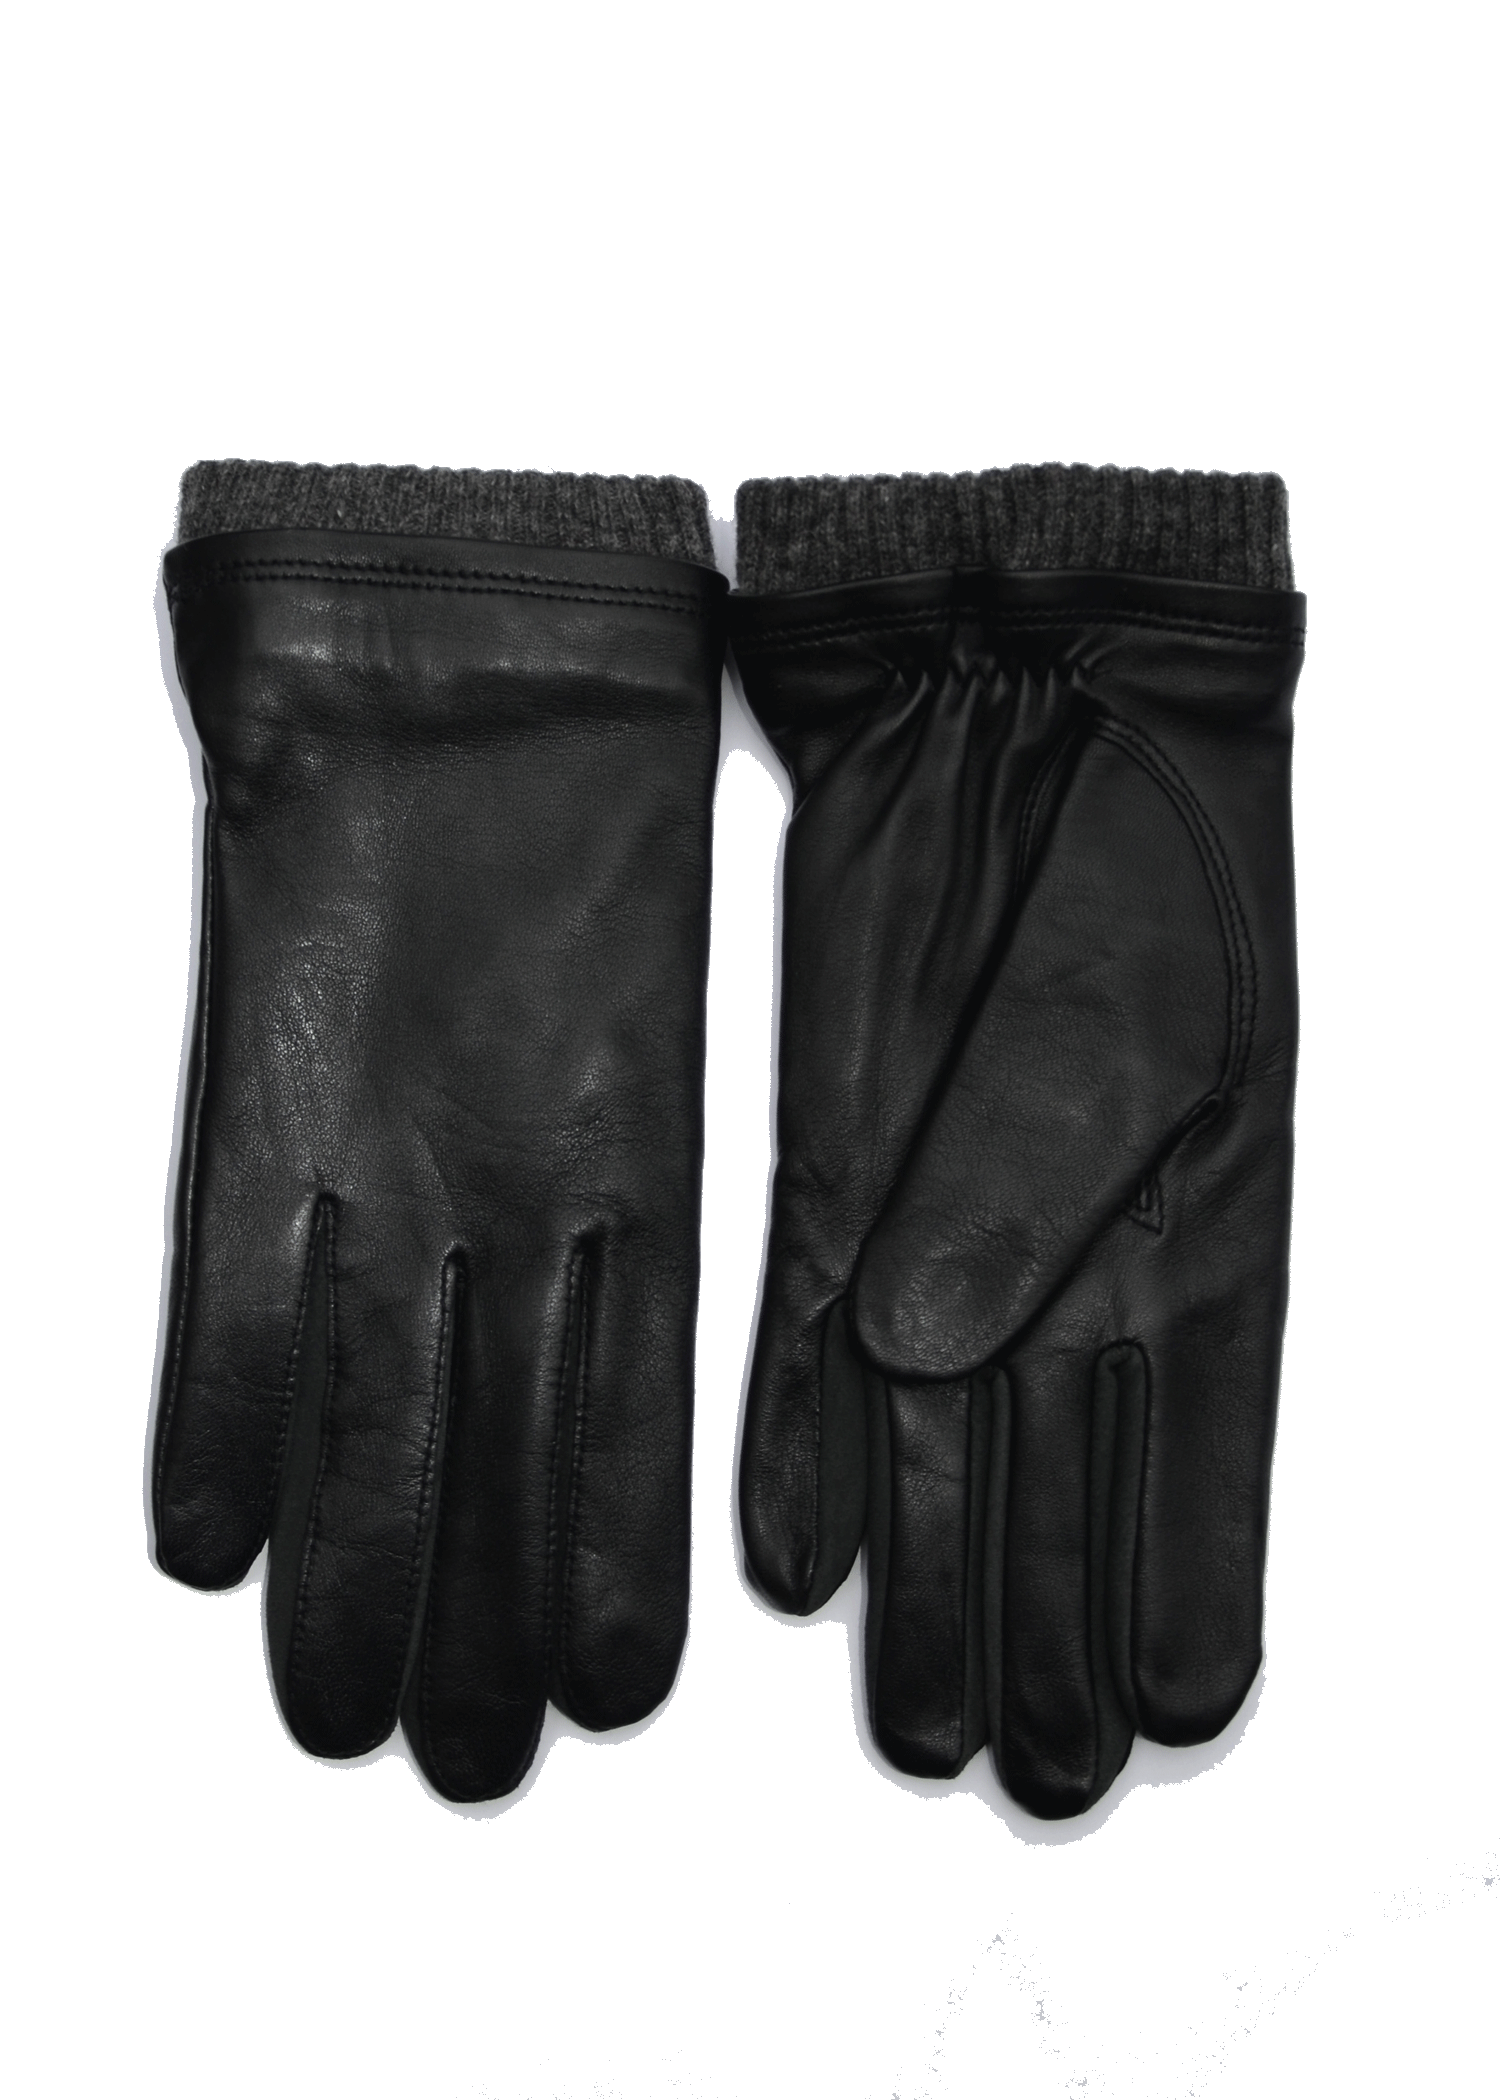 afspejle Mars Calamity Dessie Sort Lammeskind Handske med strik foer / Køb gaucho Skind Handsker  Online